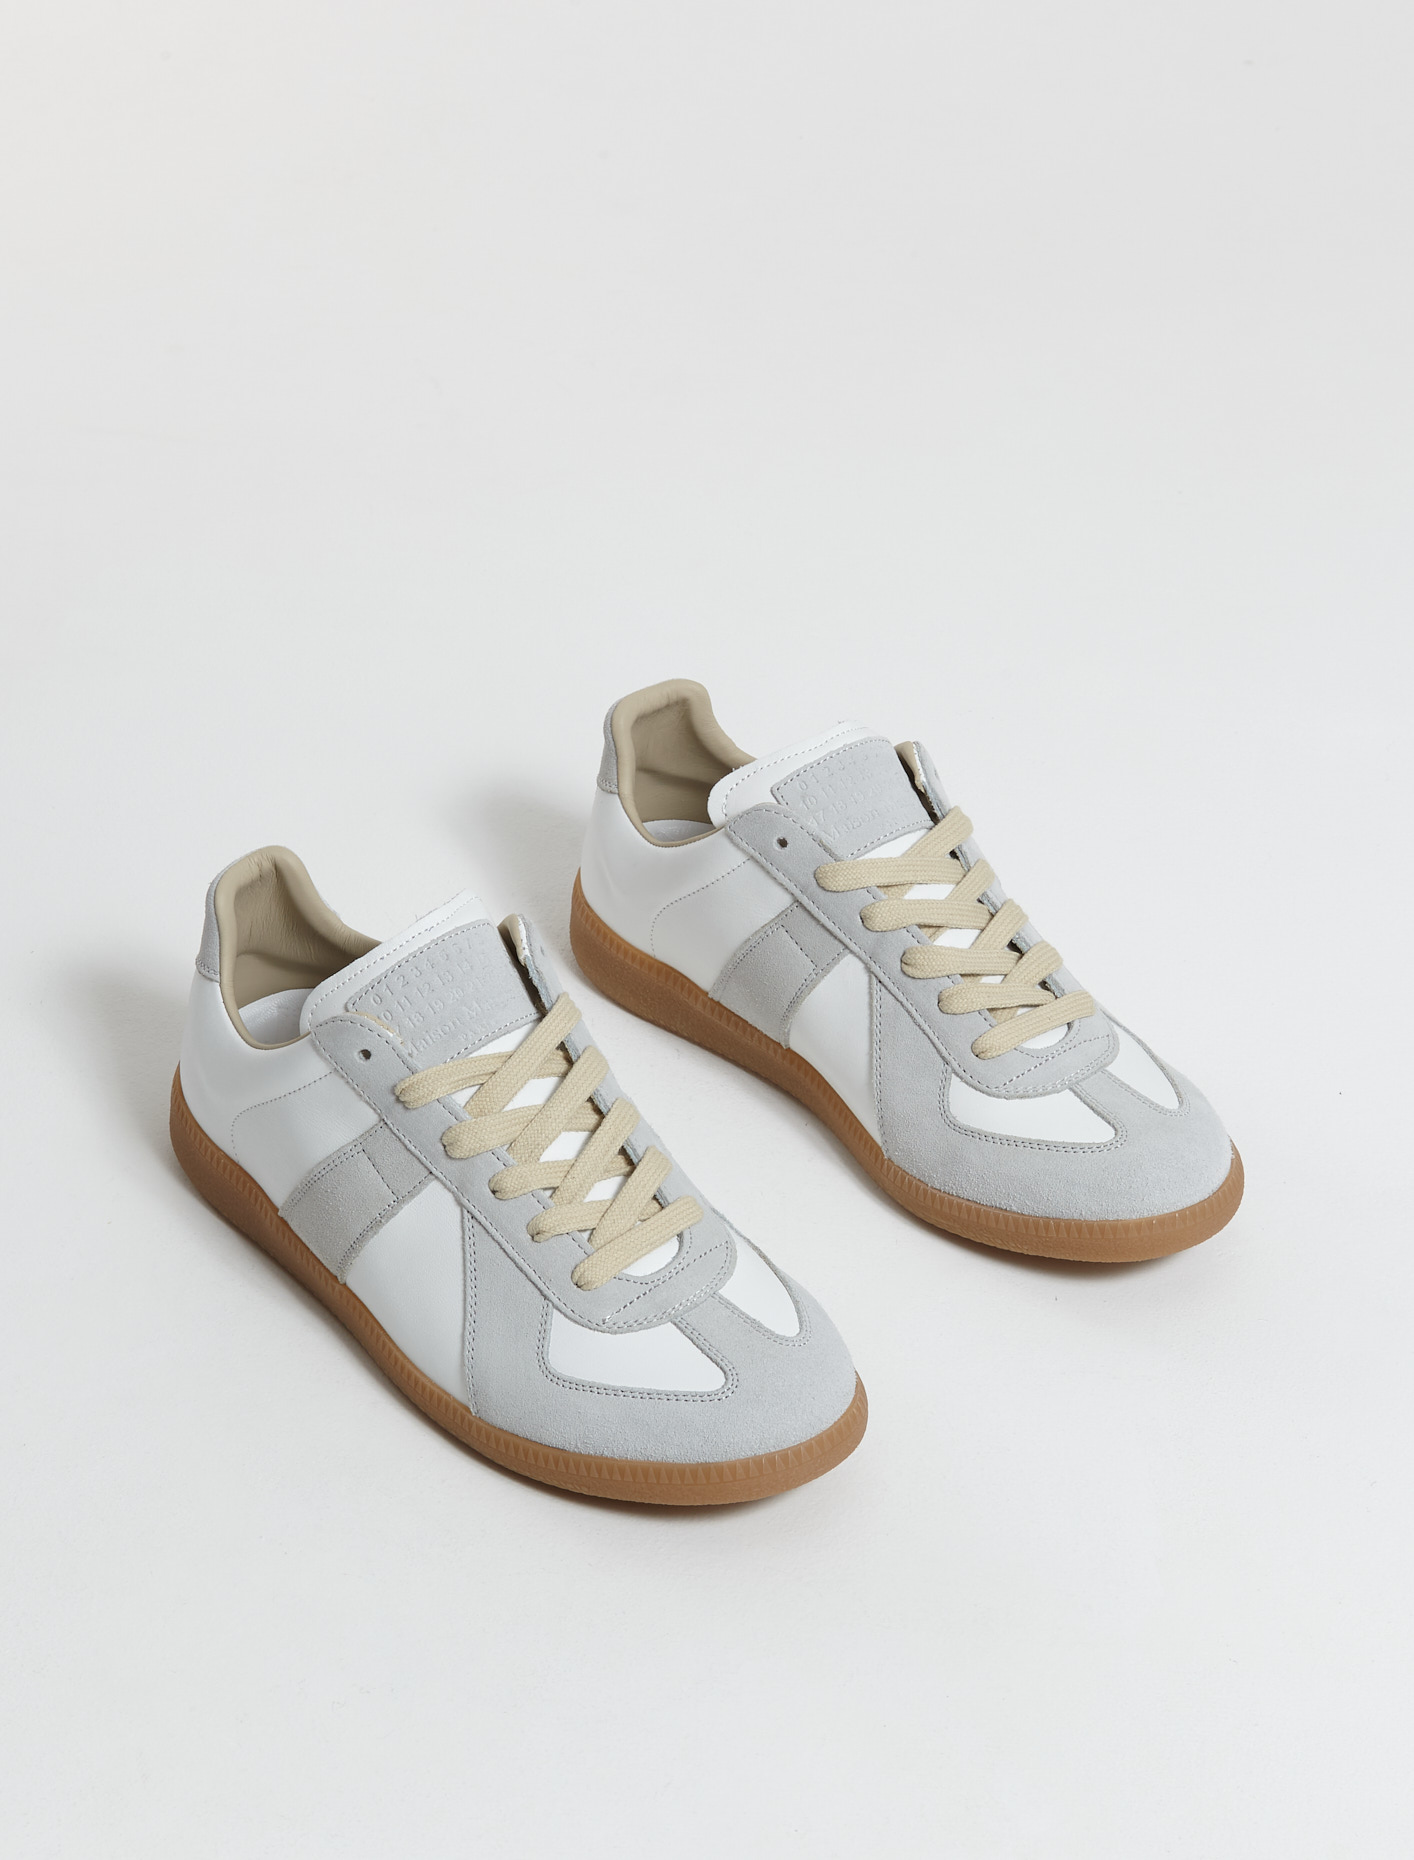 Maison Margiela Replica Sneakers in Off White | Voo Store Berlin ...